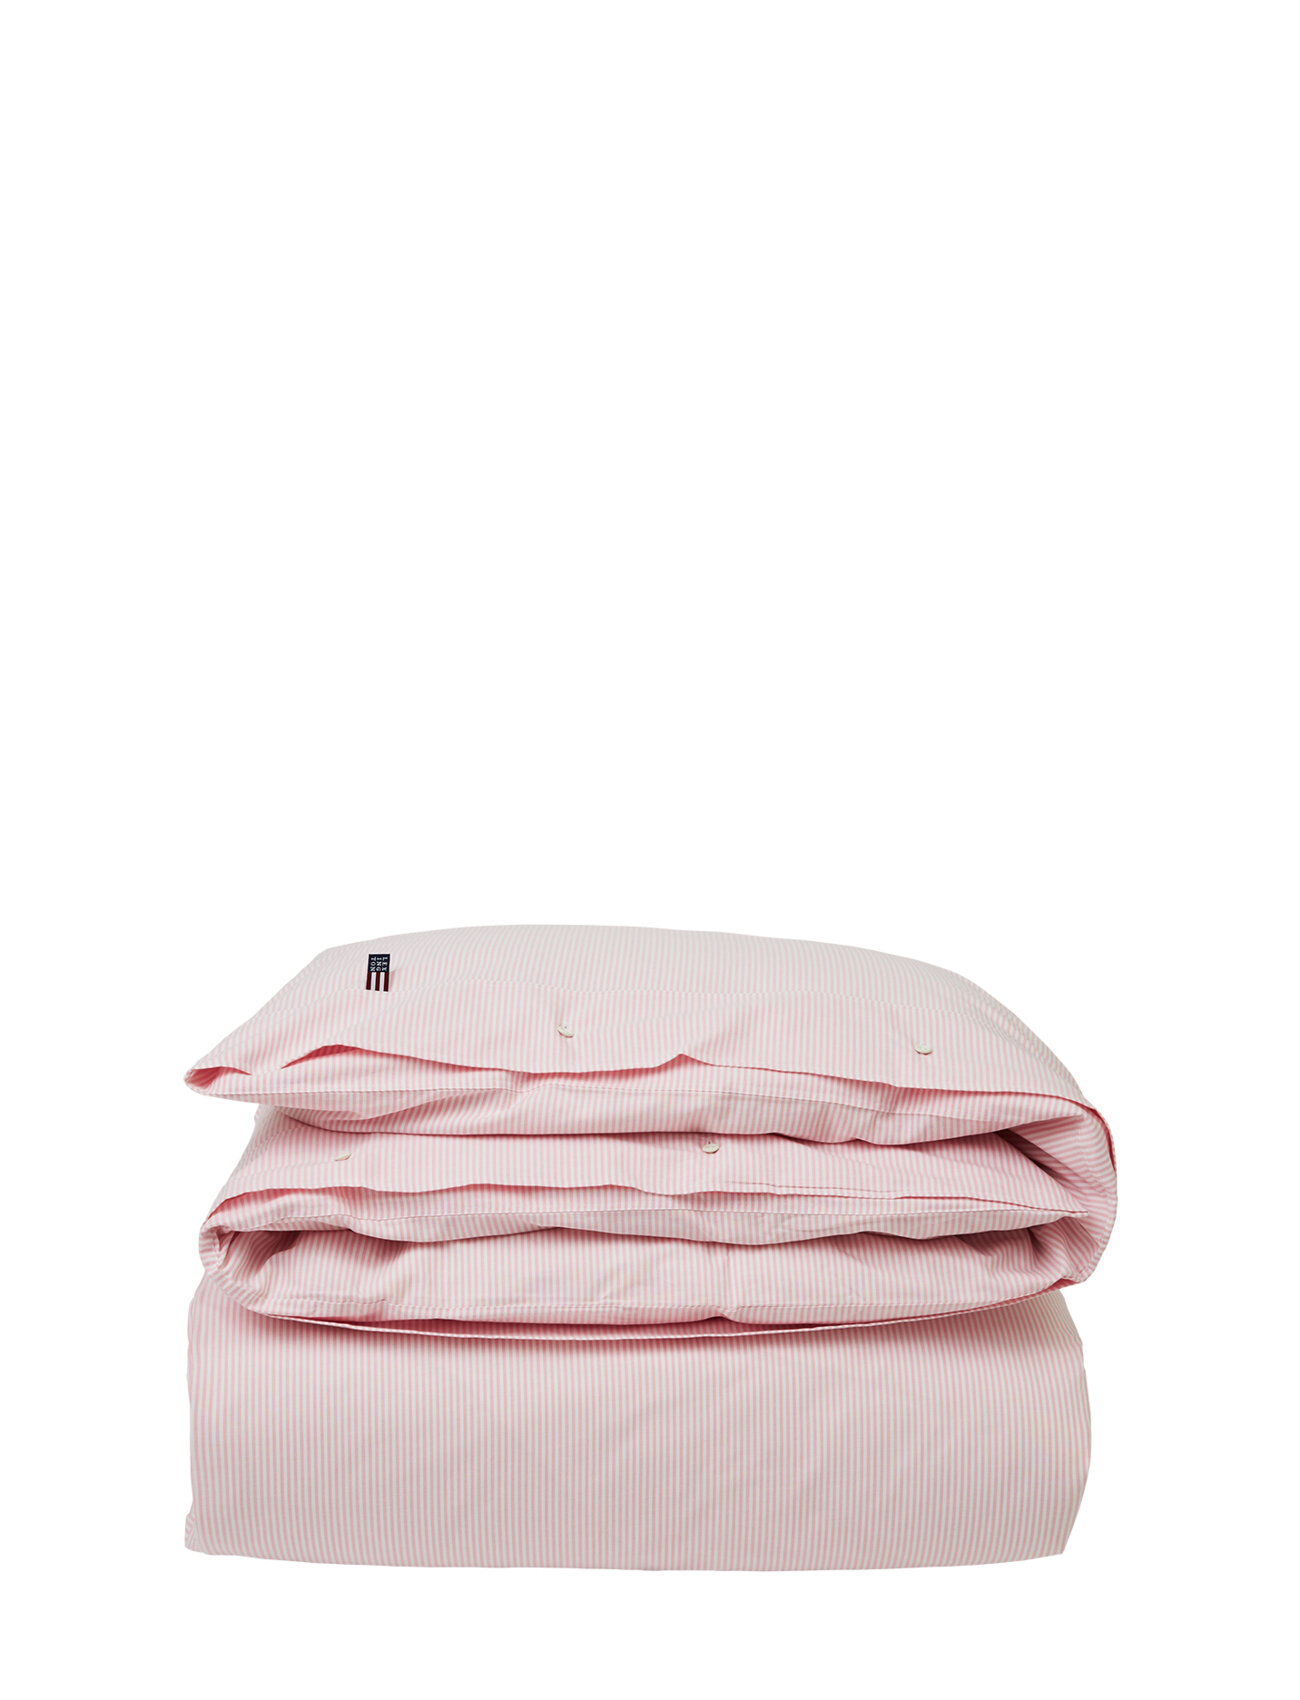 Lexington Home Pin Point Pink/White Duvet Home Textiles Bedtextiles Duvet Covers Rosa Lexington Home